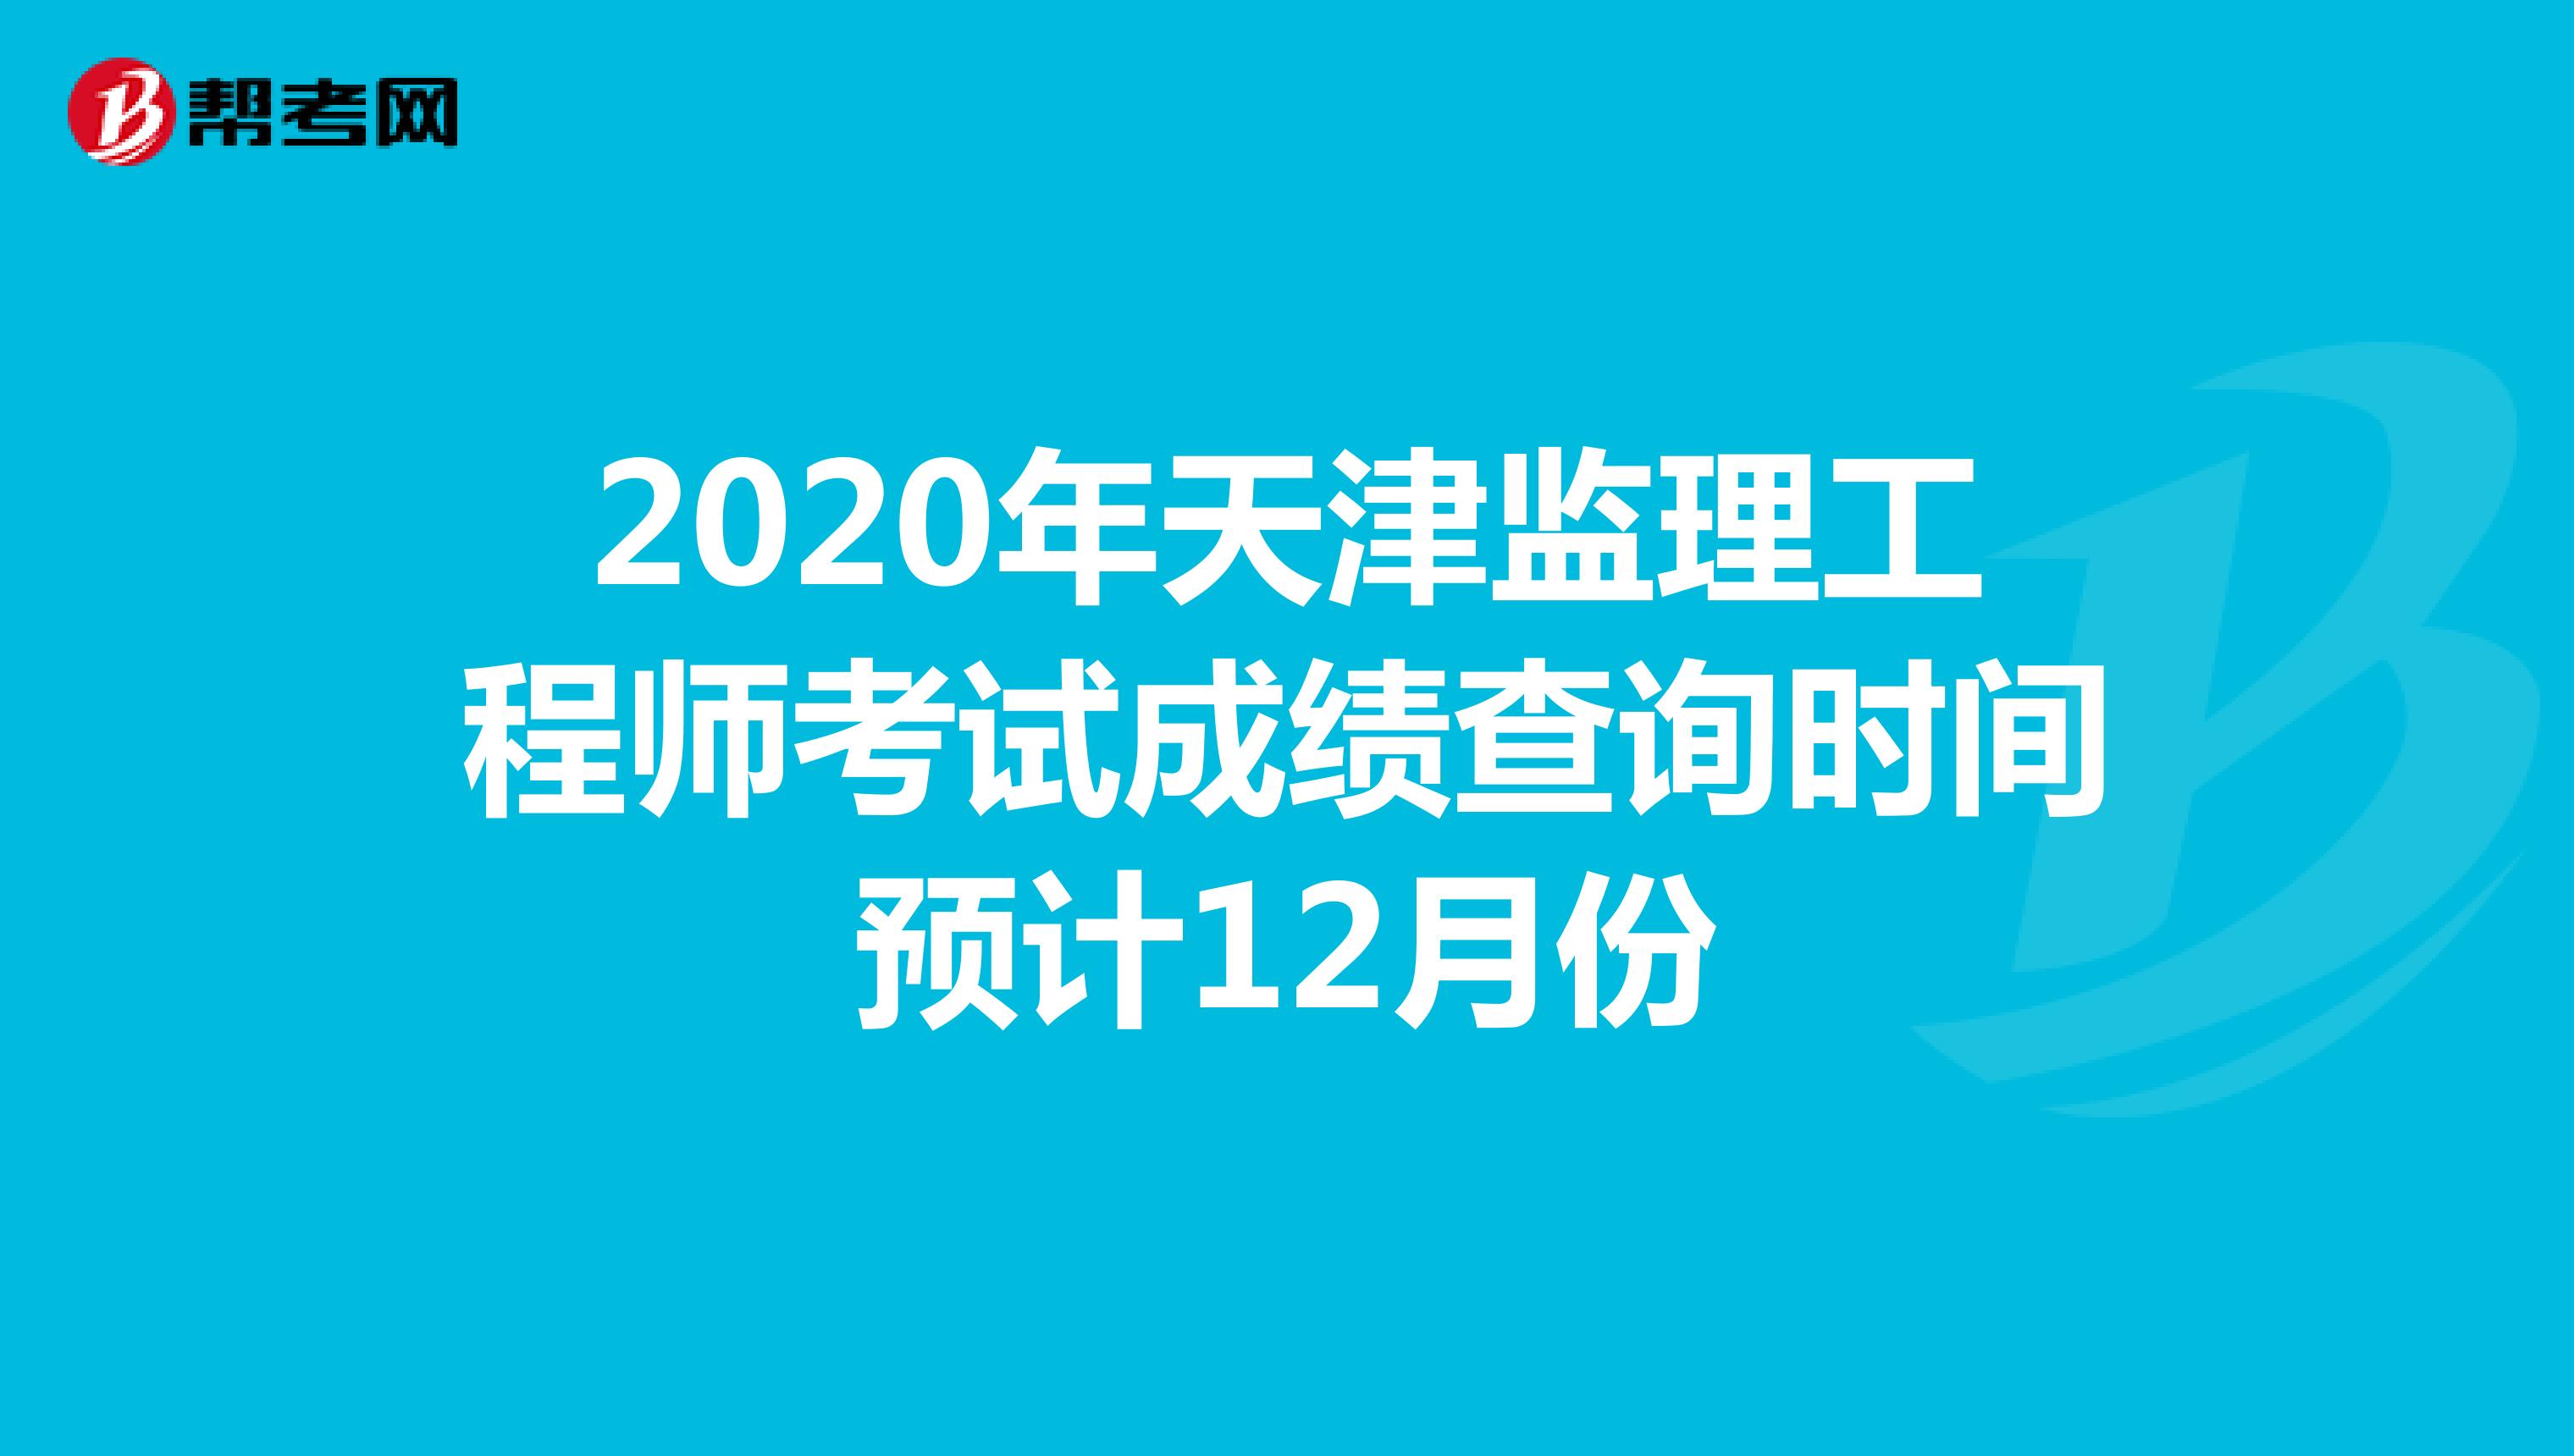 2020年天津监理工程师考试成绩查询时间预计12月份